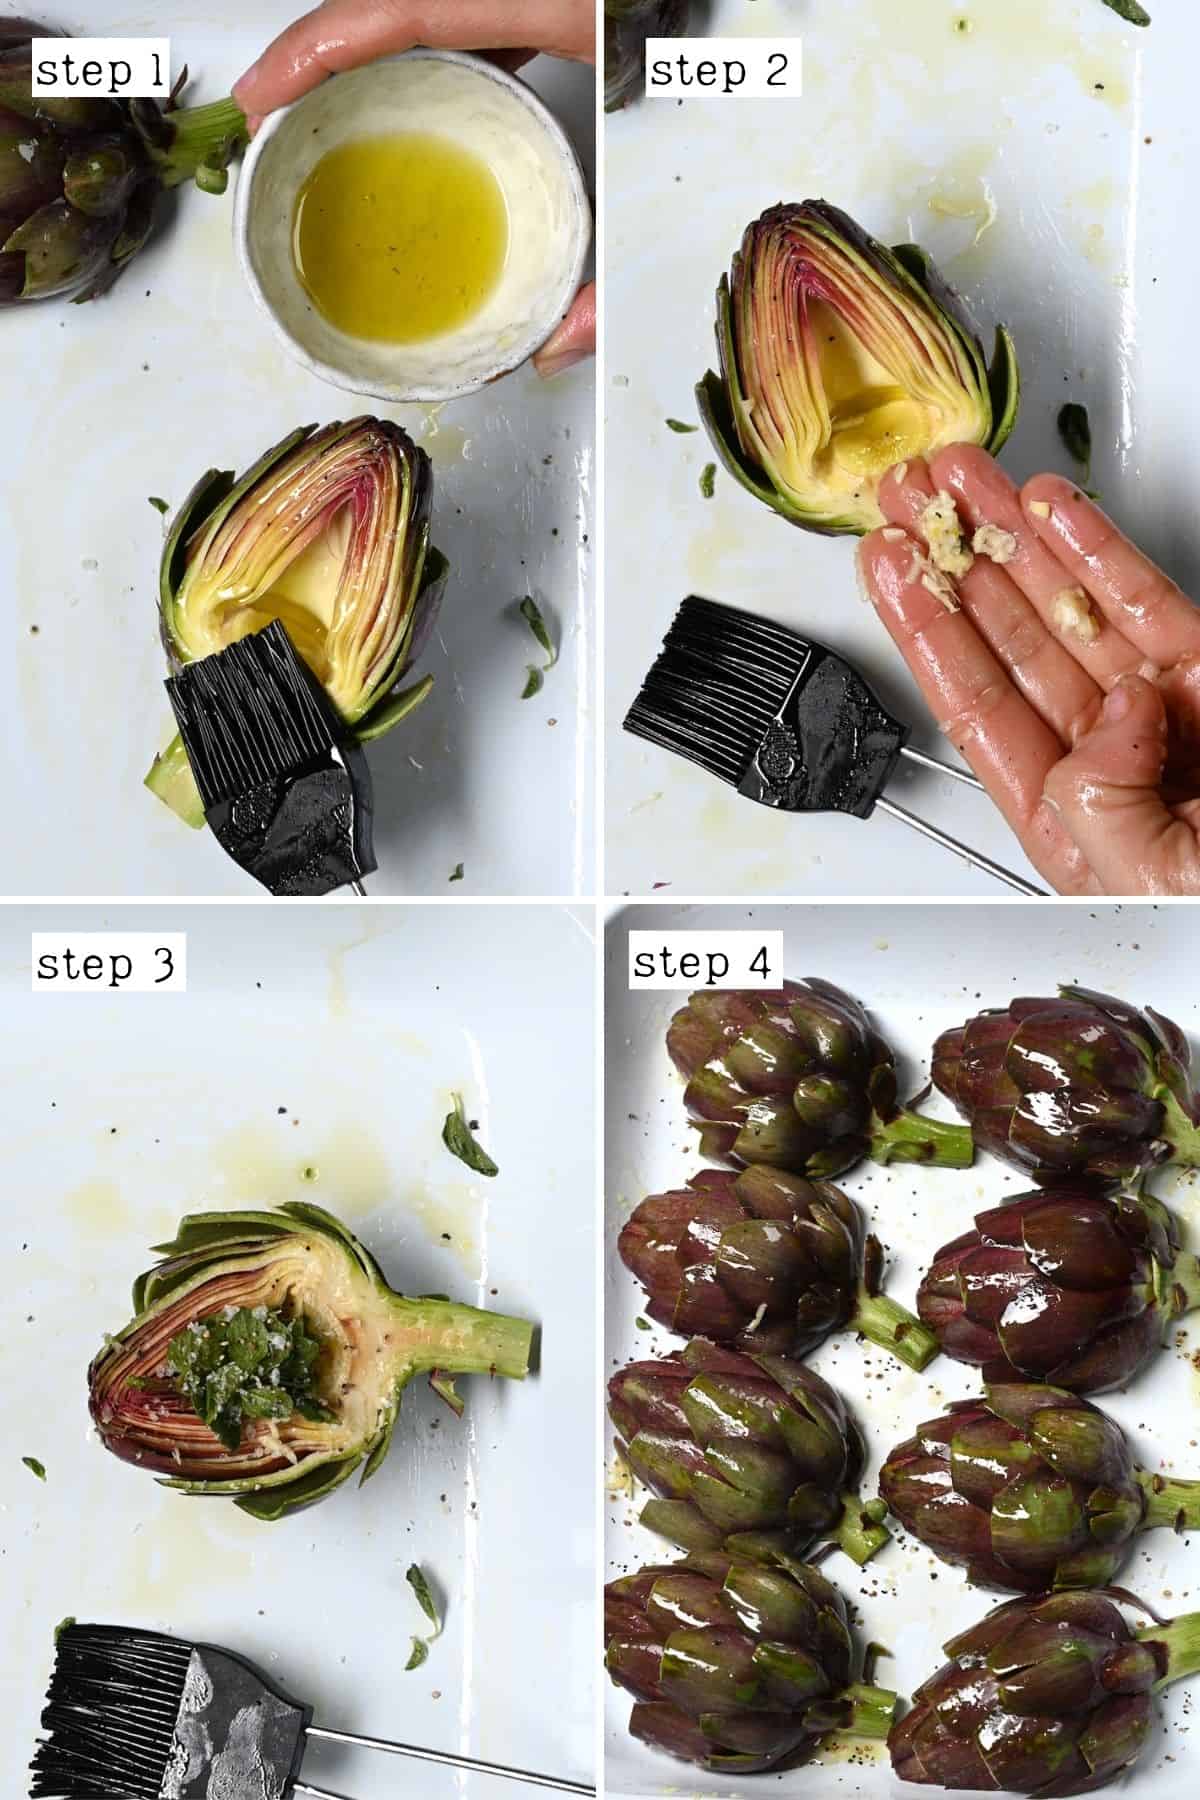 Steps for preparing artichoke halves for roasting